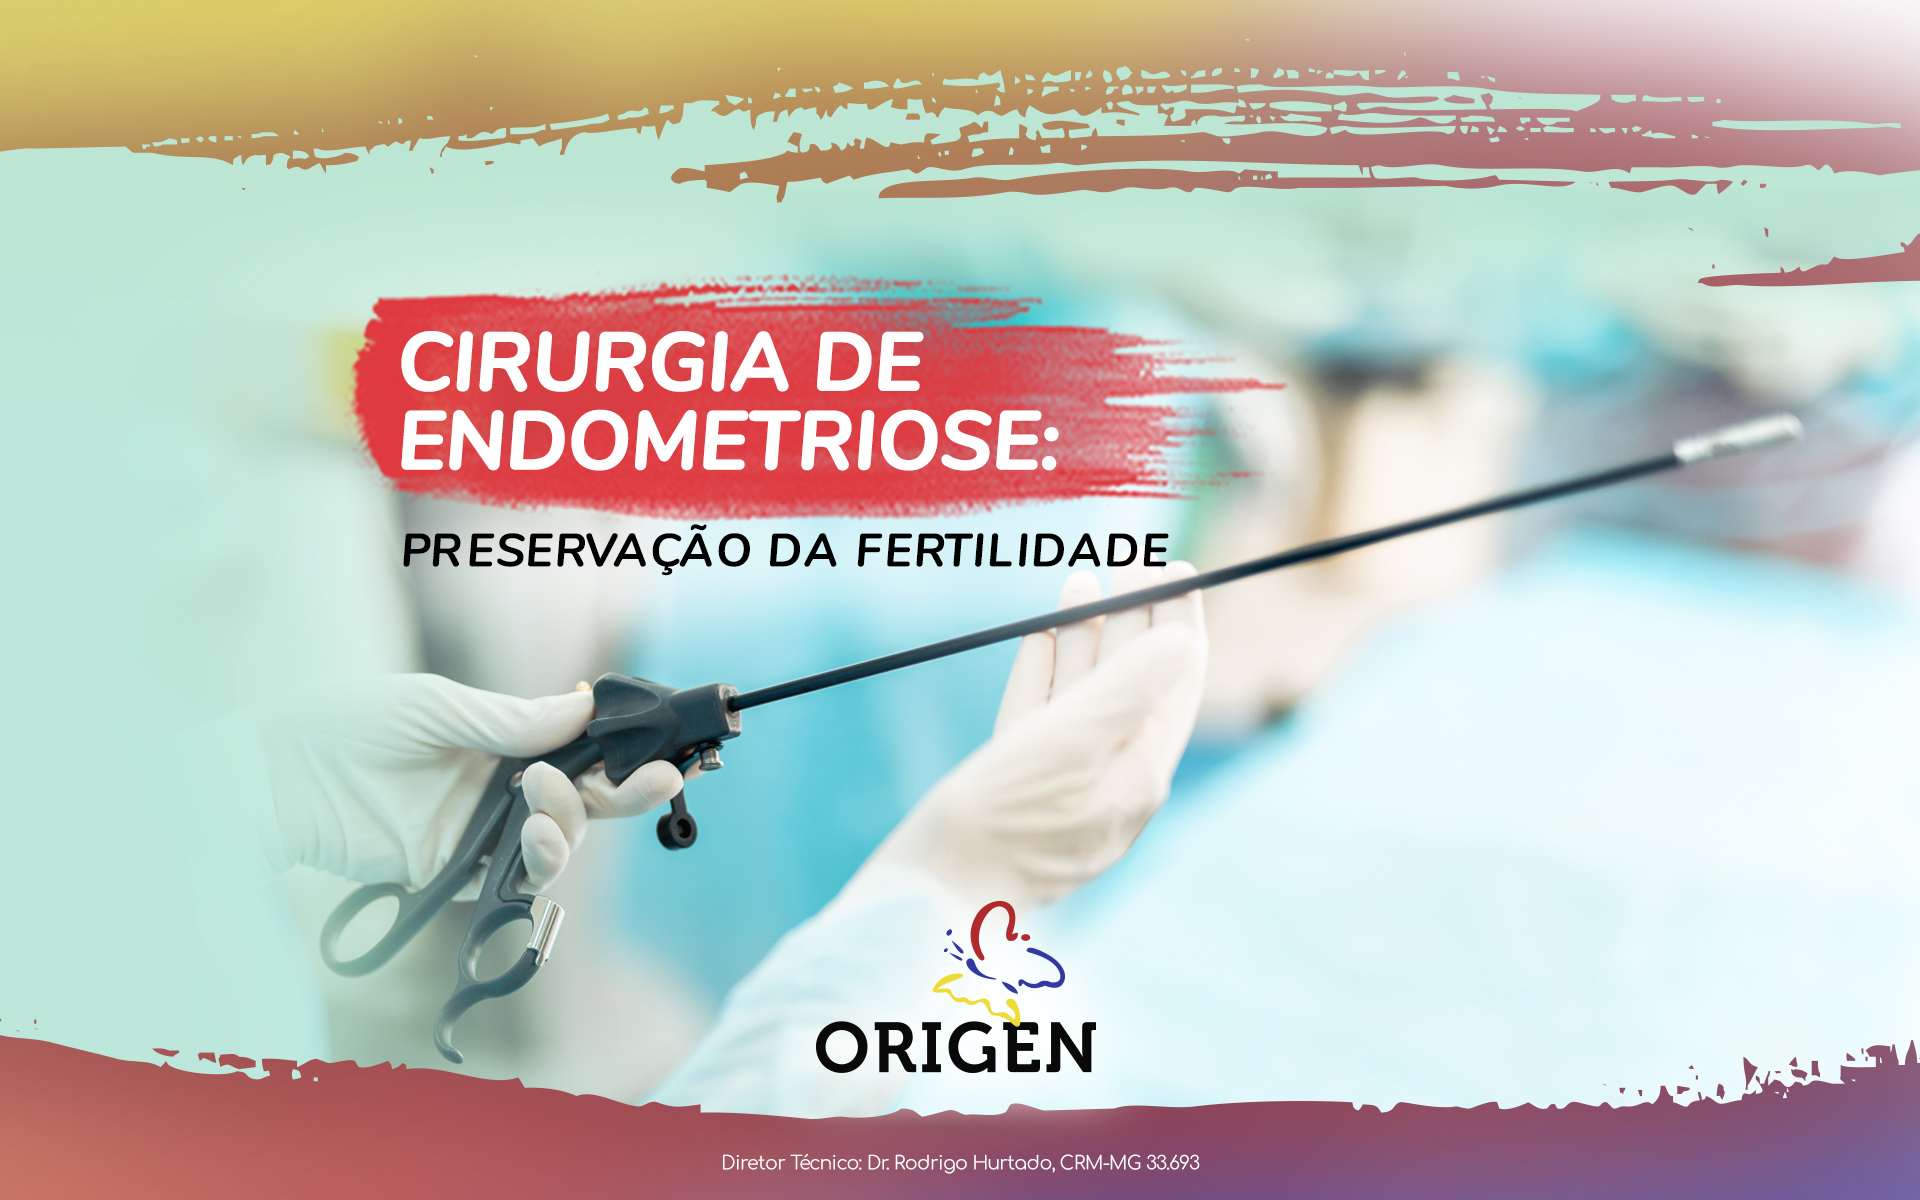 Cirurgia de endometriose: preservação da fertilidade